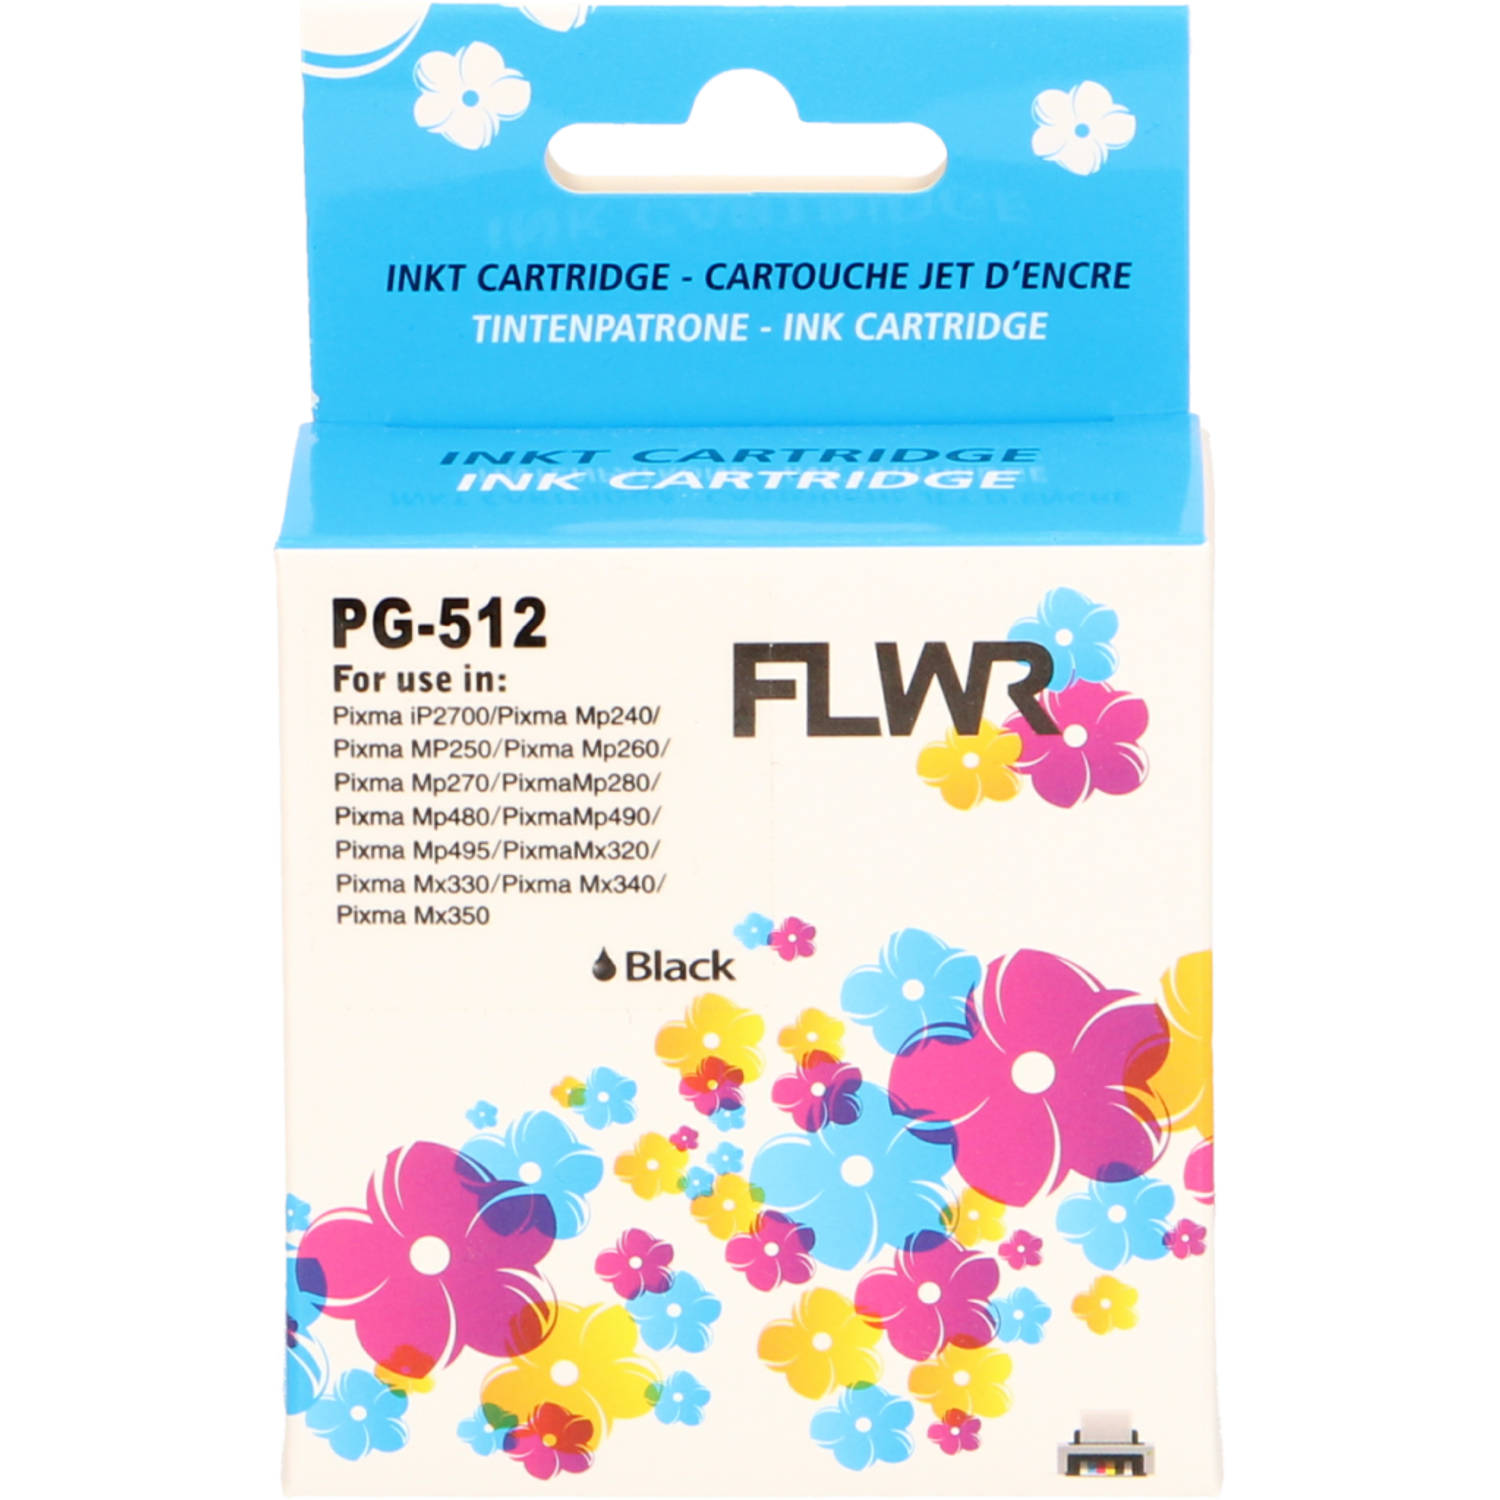 FLWR Canon PG-512 zwart cartridge